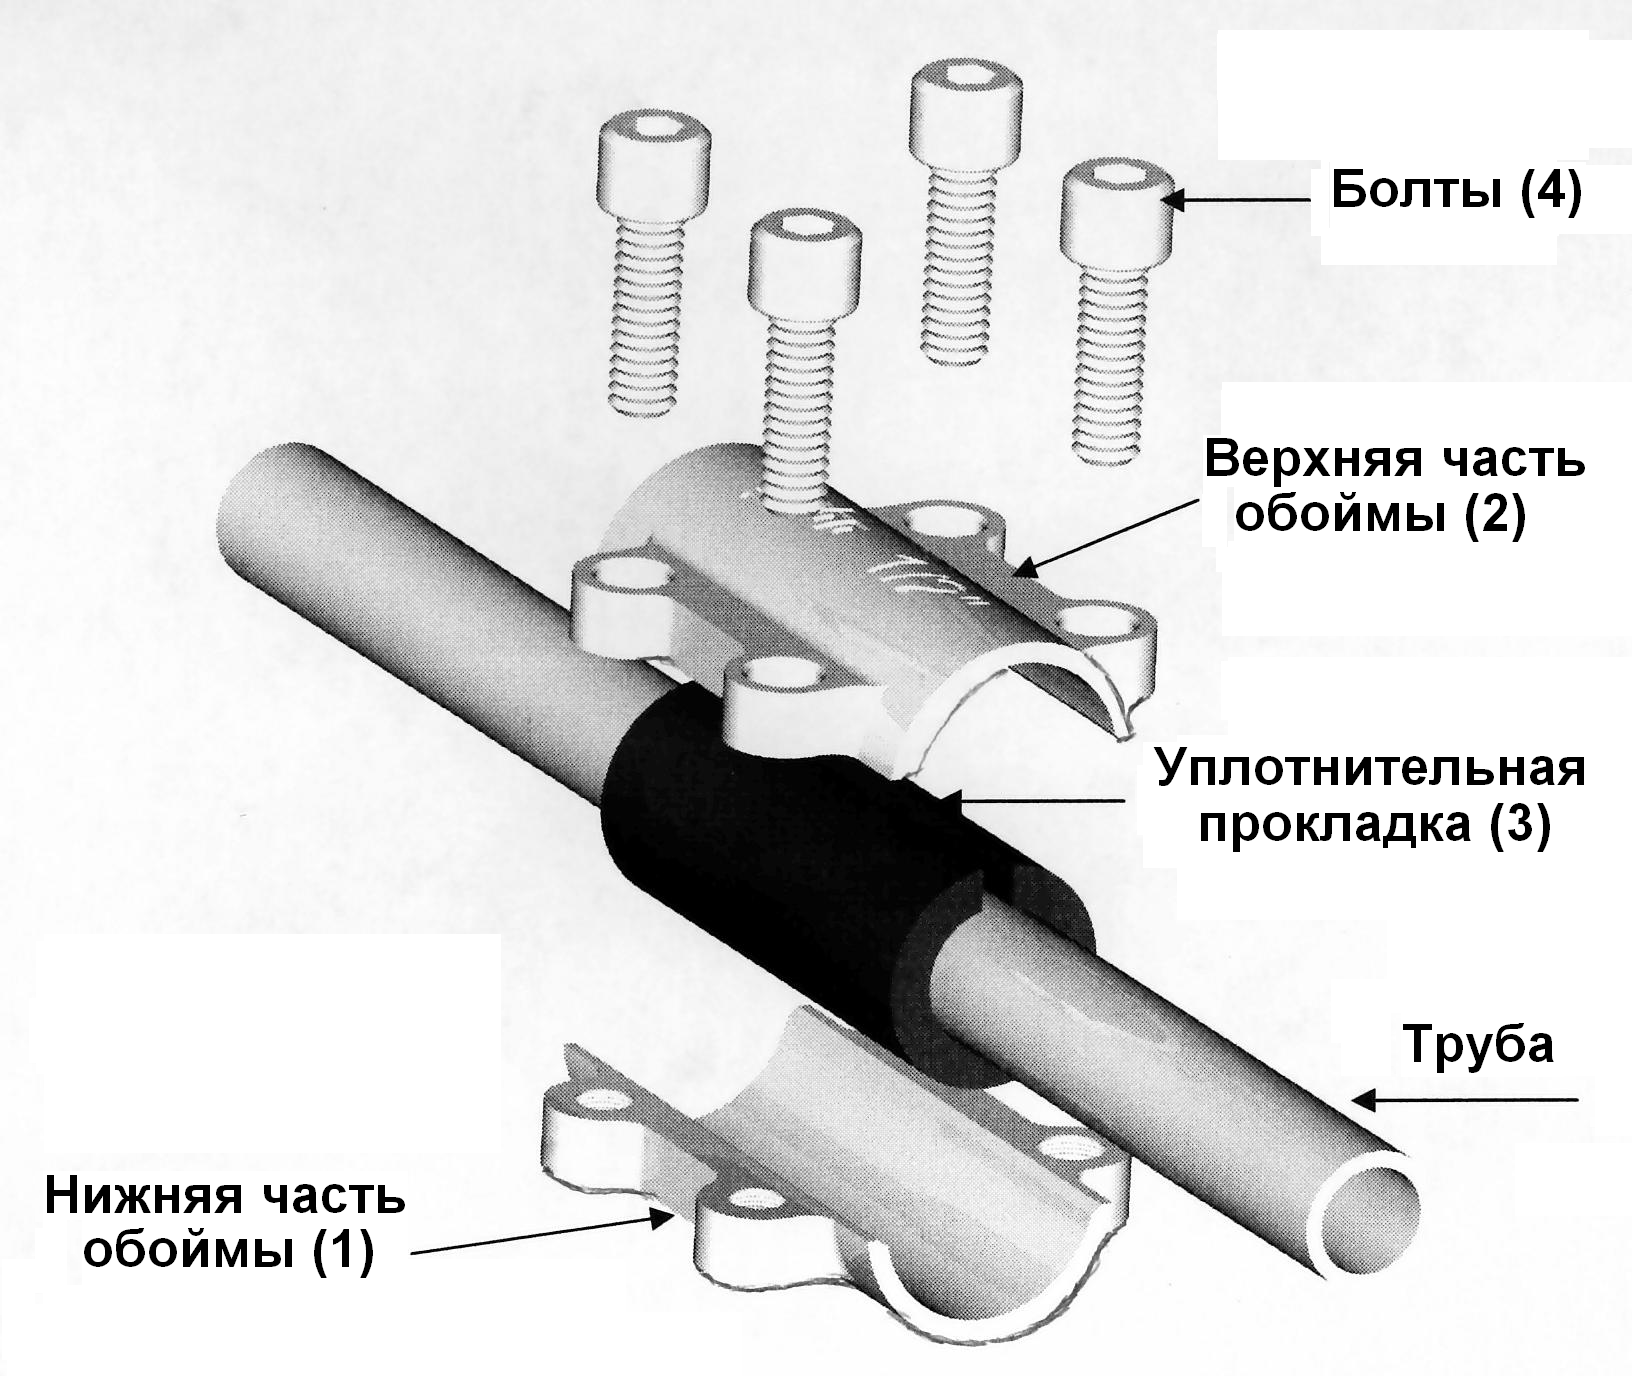 Соединение без резьбы. Обойма ремонтная Gebo DSK 1/2". Соединение металлических труб без сварки и резьбы. Ремонтная муфта для полипропиленовых труб 1/2. Схема соединения стальных труб на резьбе.